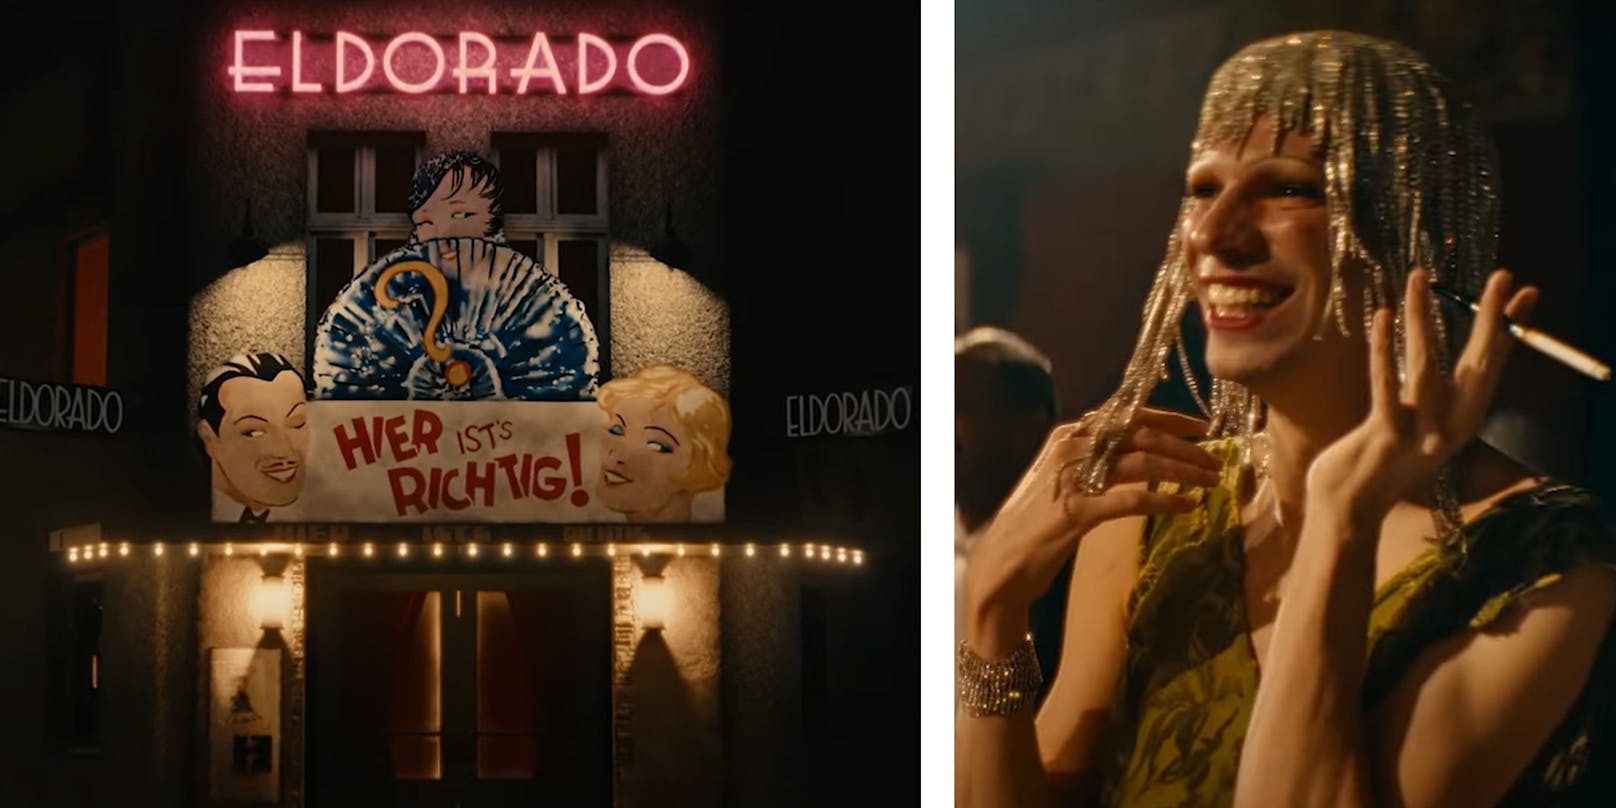 In der Netflix-Doku "Eldorado" geht es um den berüchtigten queeren Nachtclub.